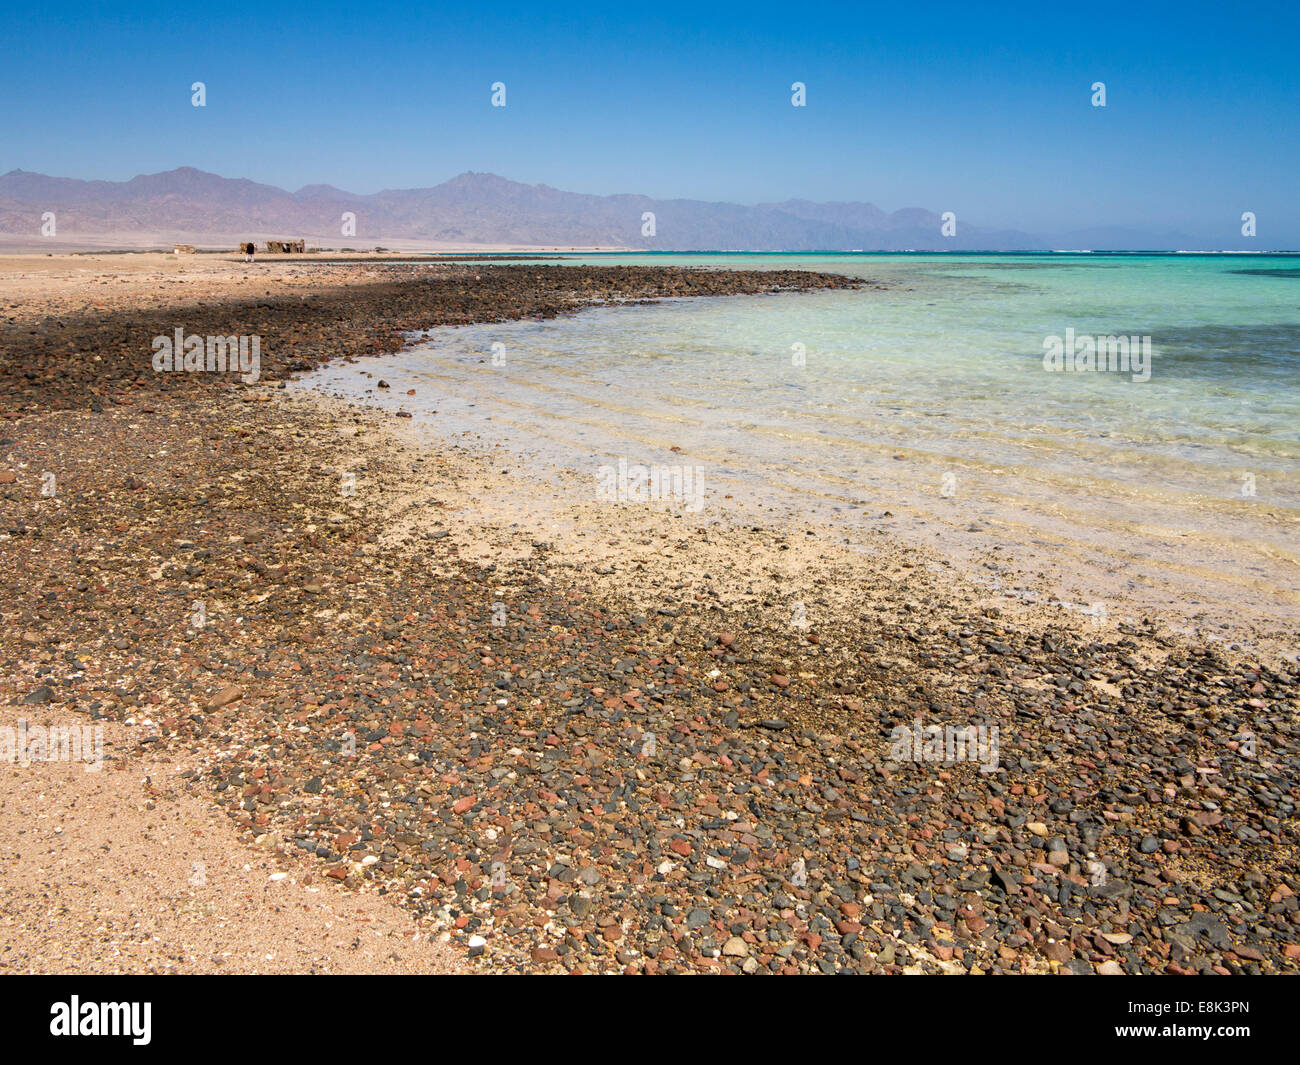 L'Egypte, le Sinaï, Sharm el Sheikh, le Parc National de Nabq, golfe d'Aqaba, le littoral de la Mer Rouge Banque D'Images